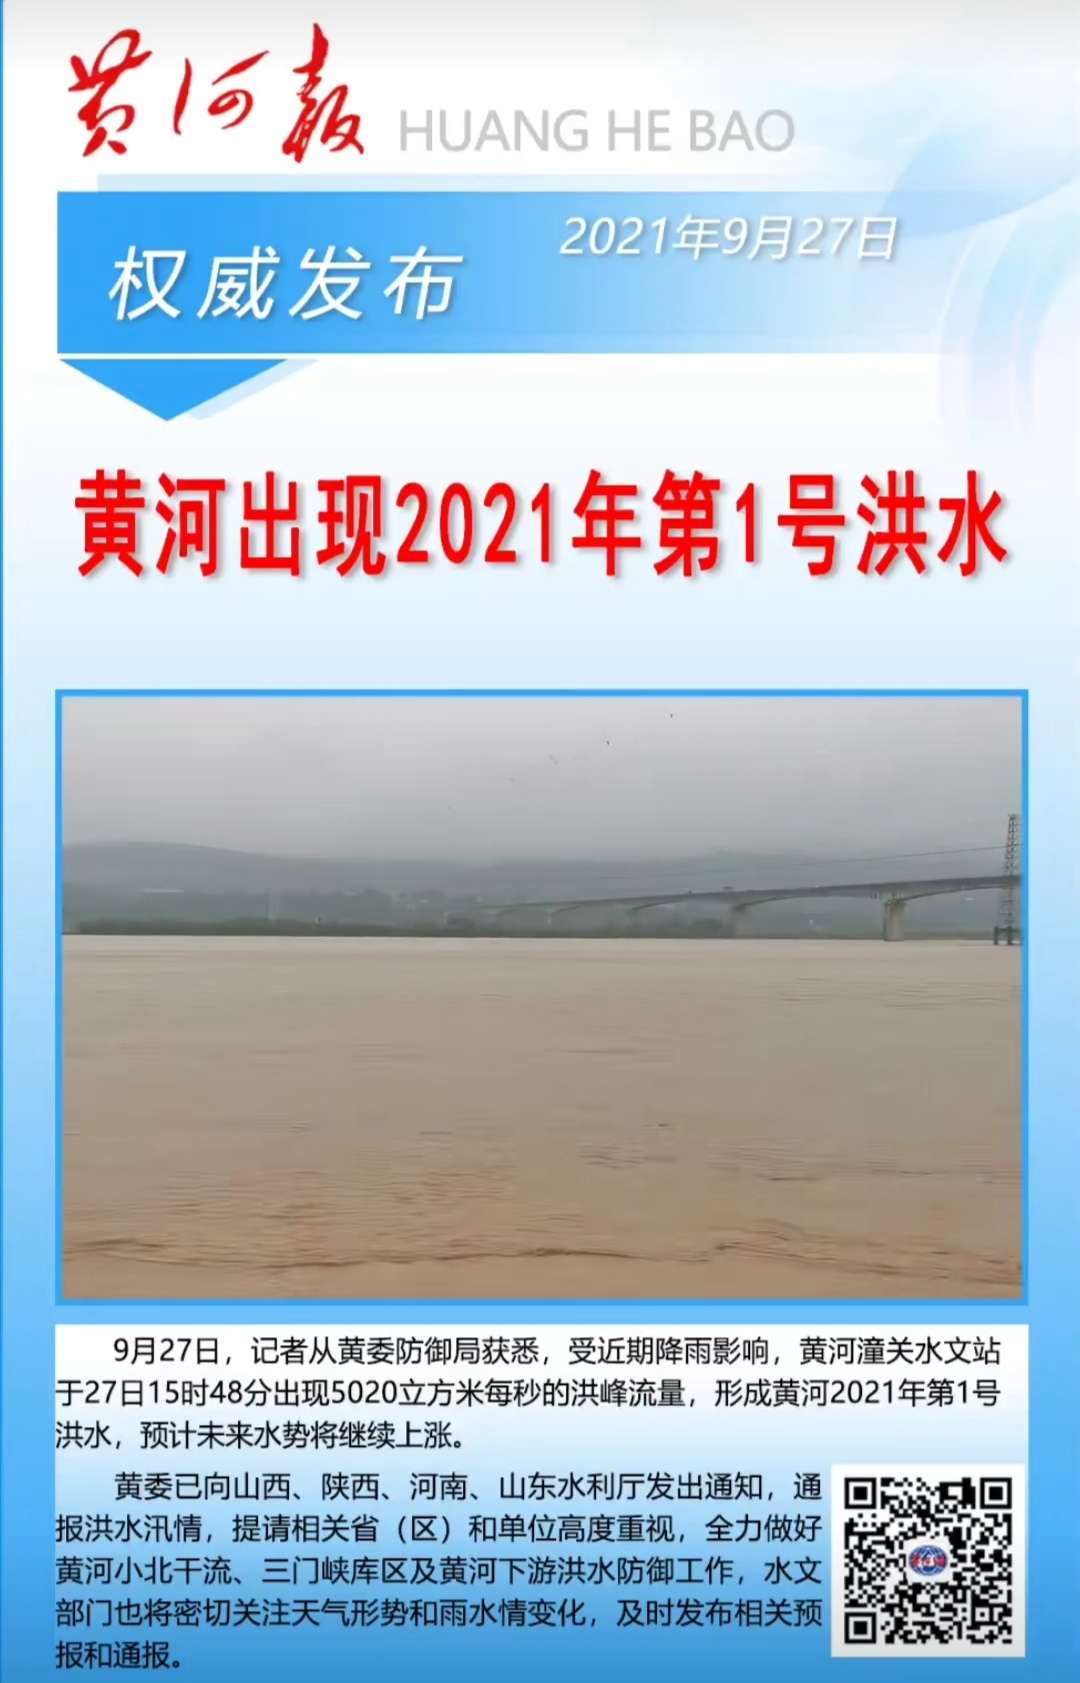 黄河出现2021年第1号洪水，黄河中下游水旱灾害防御应急响应提升至Ⅲ级：HQ环球官方网站